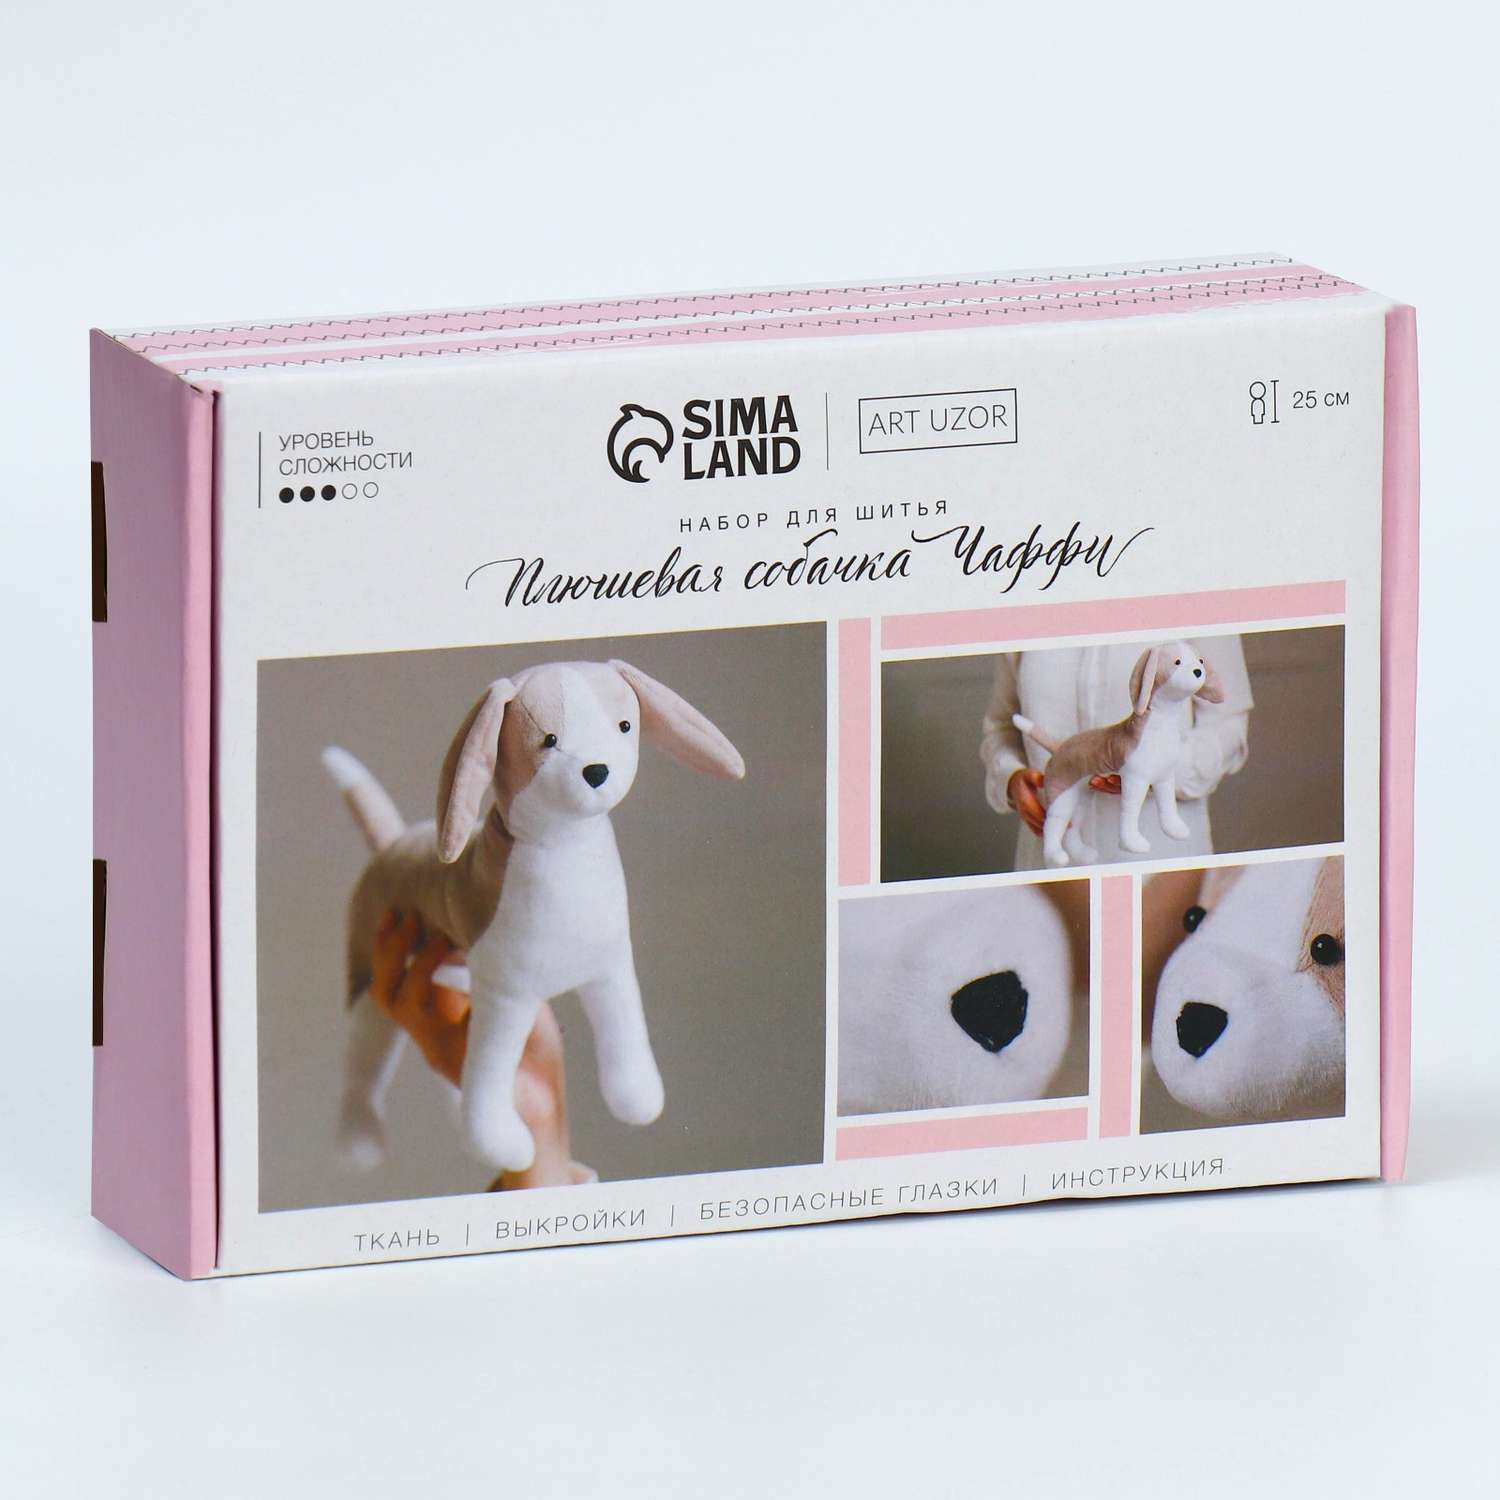 Набор для шитья Арт Узор Мягкая игрушка «Плюшевая собачка Чаффи». 15.6×22.4×5.2 см - фото 1